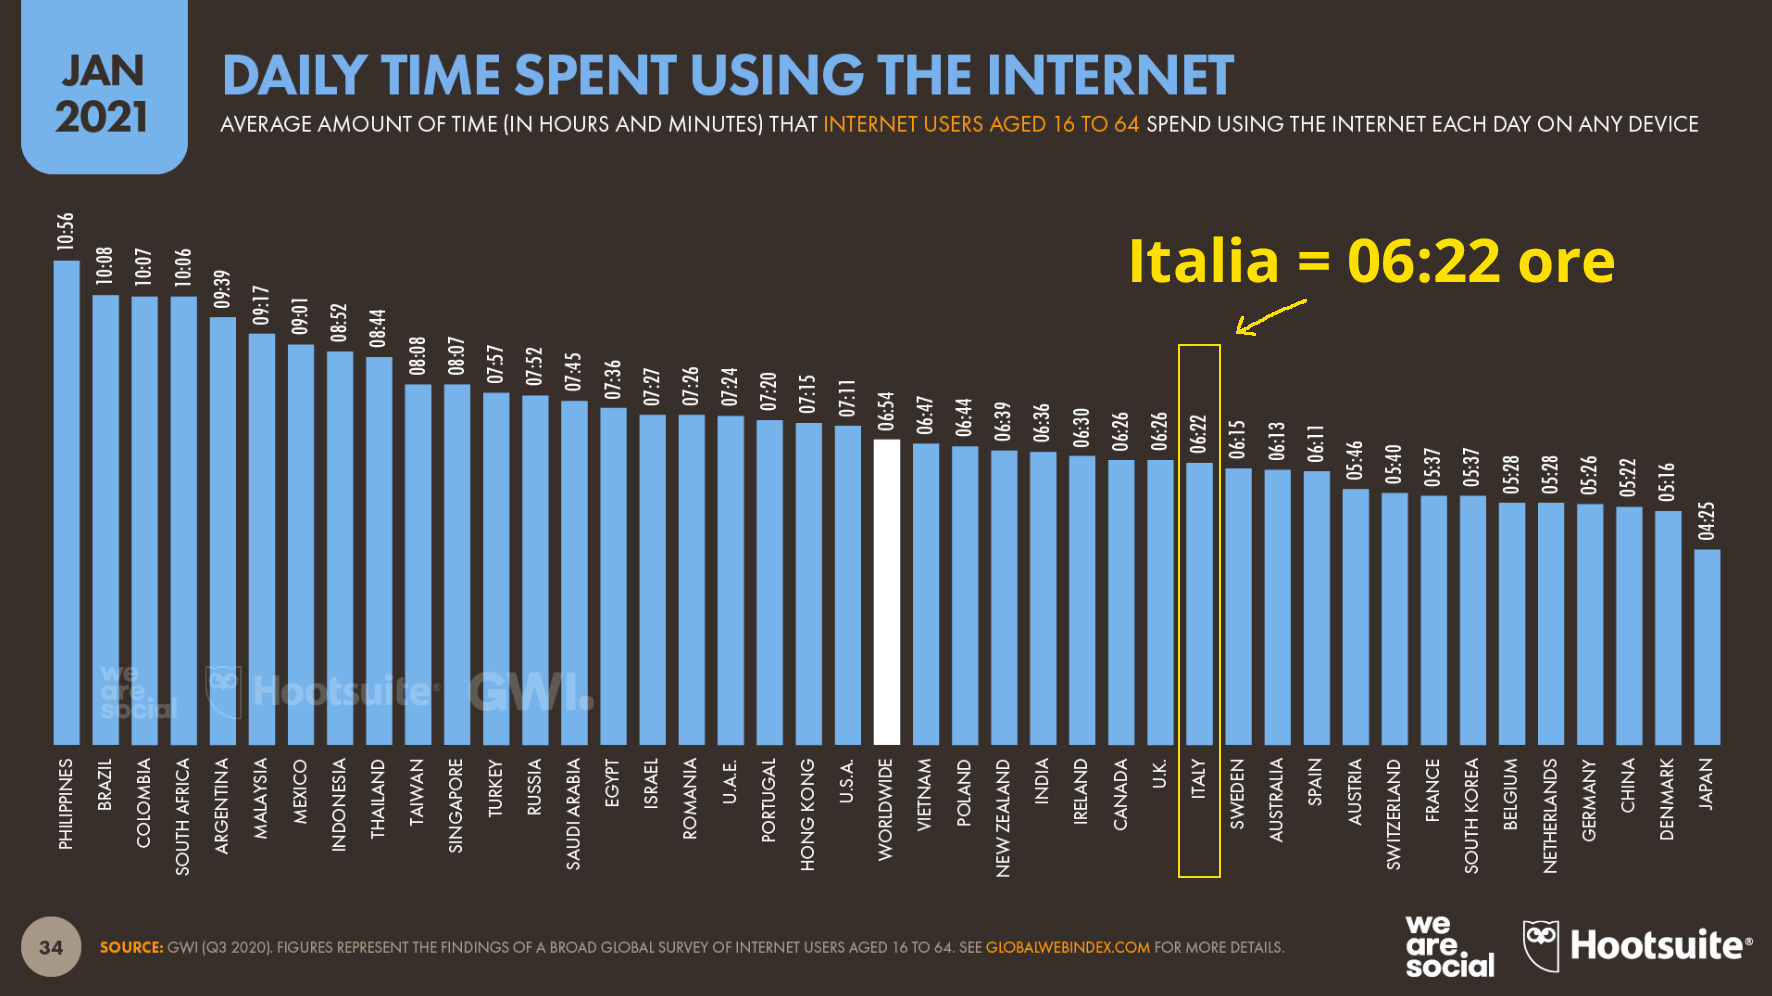 ore spese su internet in italia nel 2021